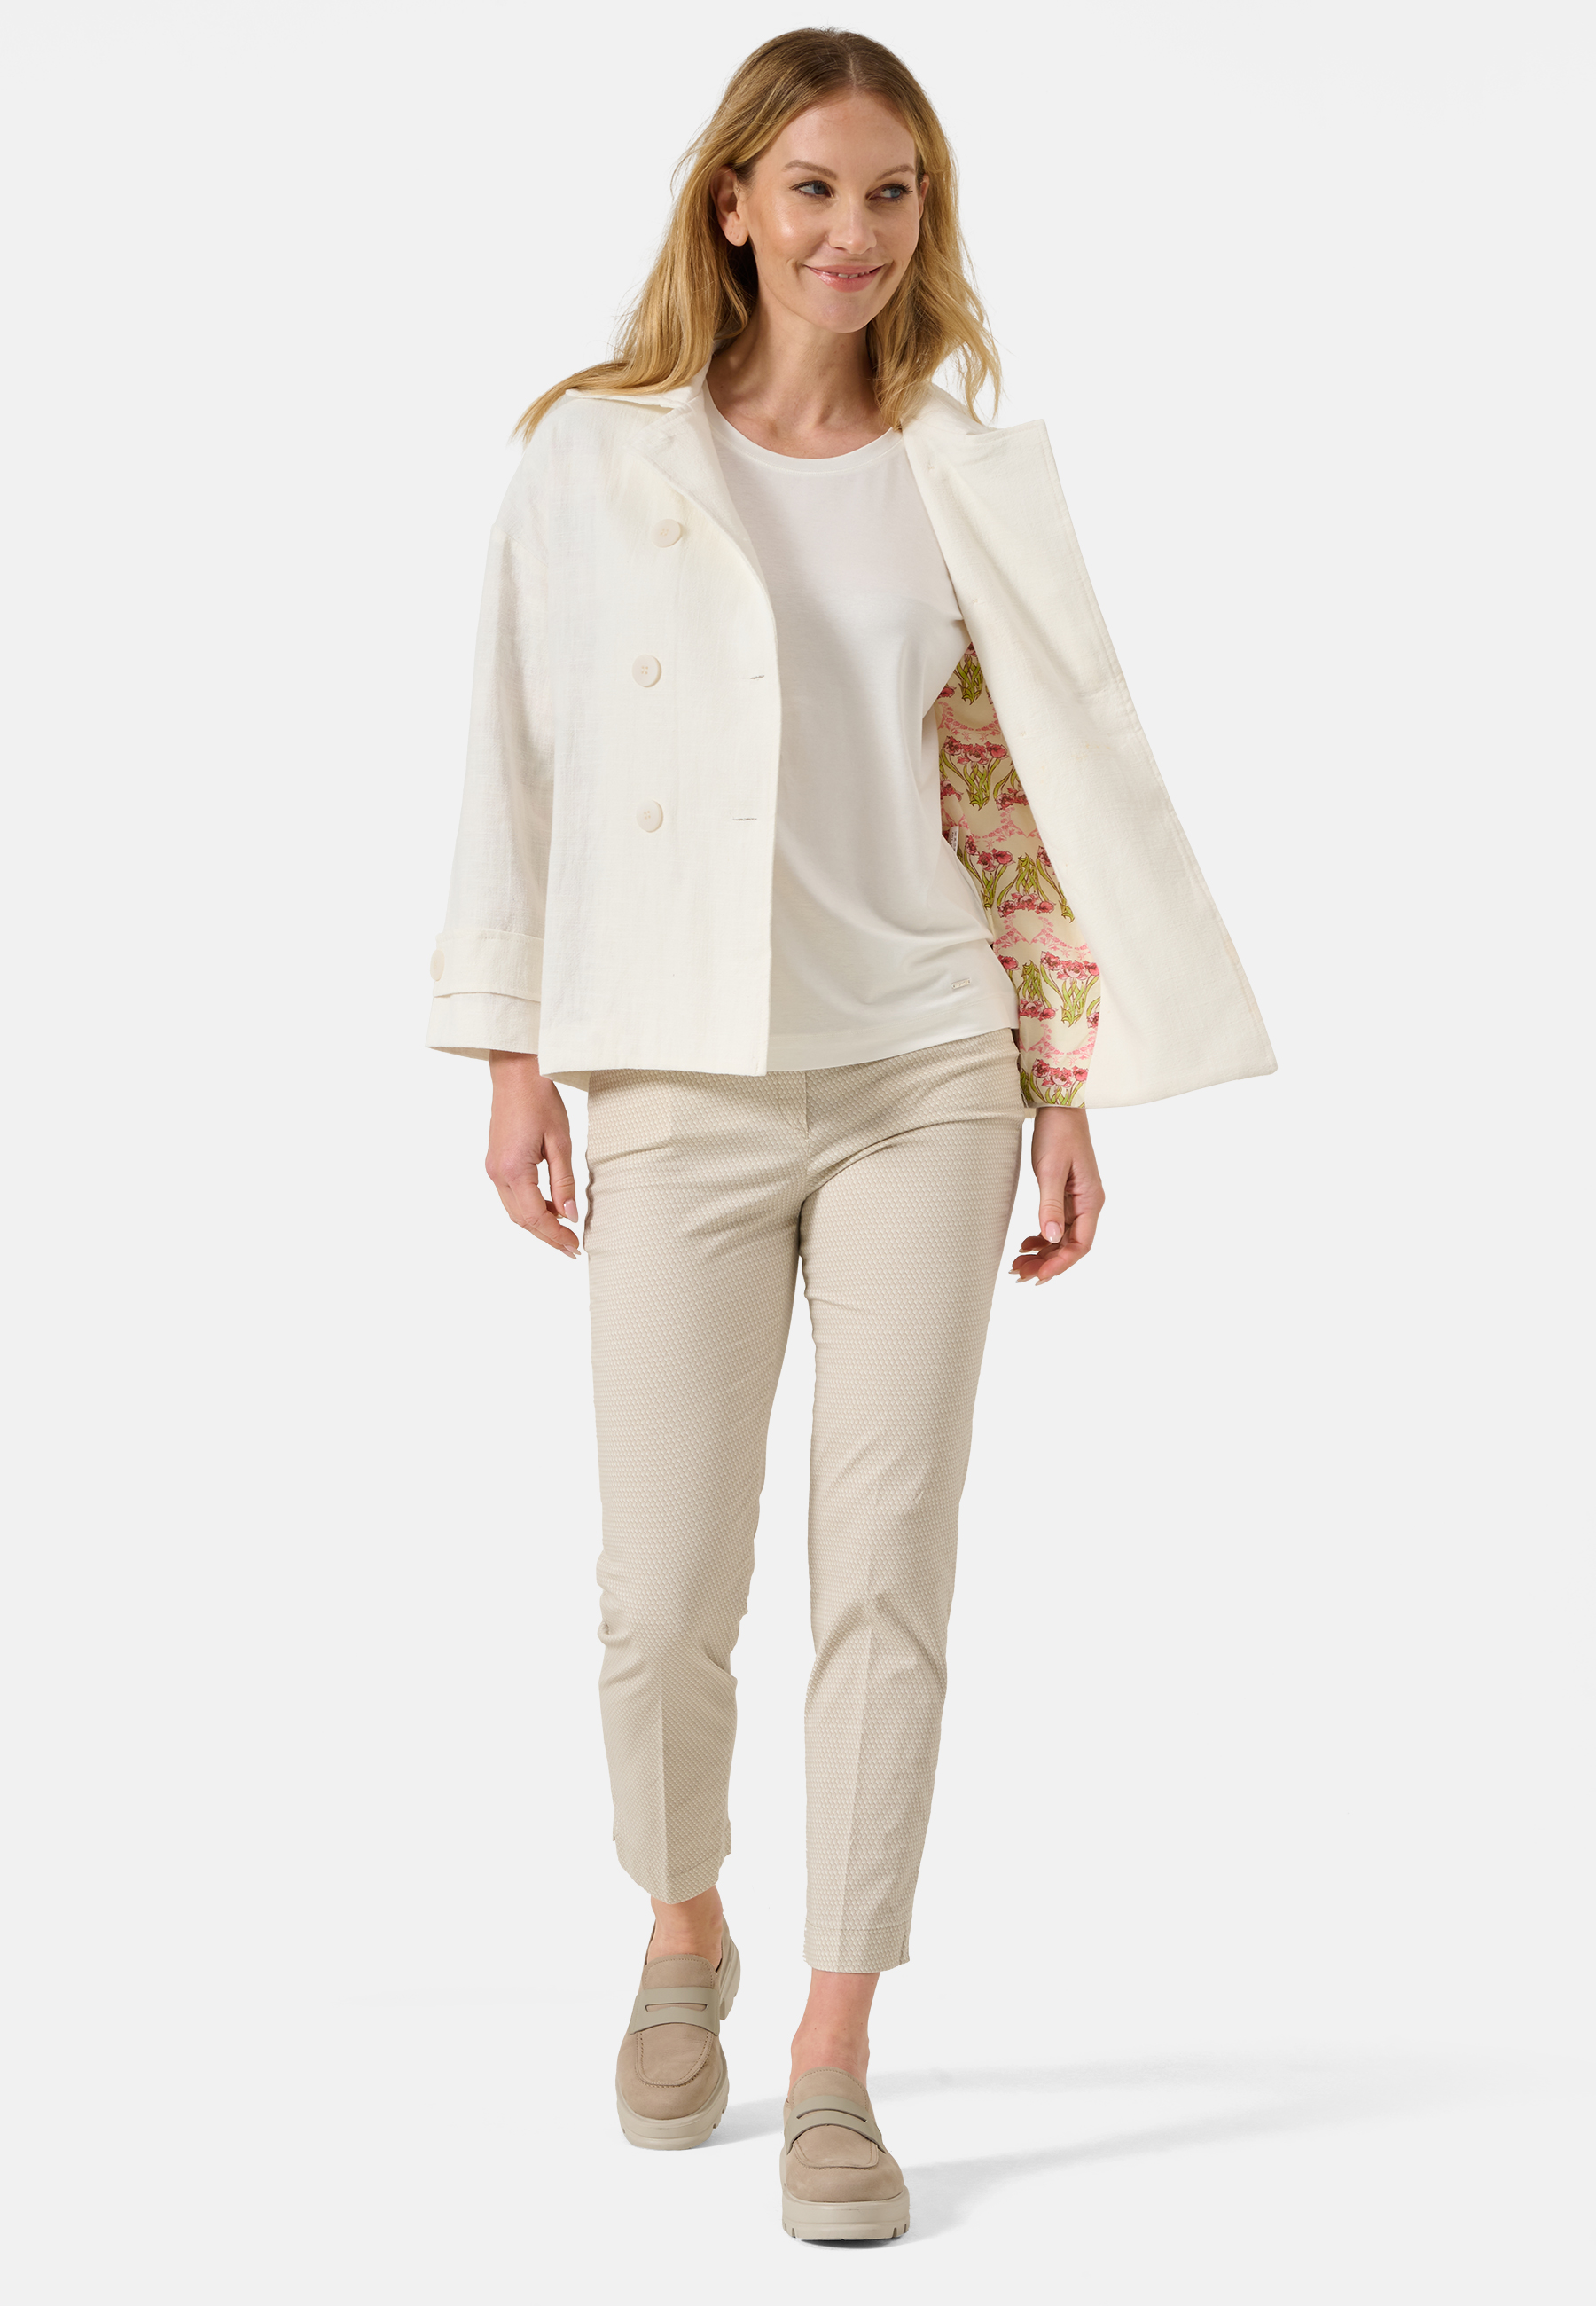 Damen Textil Mantel Fiorella in Creme von Ricano, Detailansicht vorne, offener Reversekragen mit einer Knopfreihe links, normale Größe, detailreiche Muster im Inneren